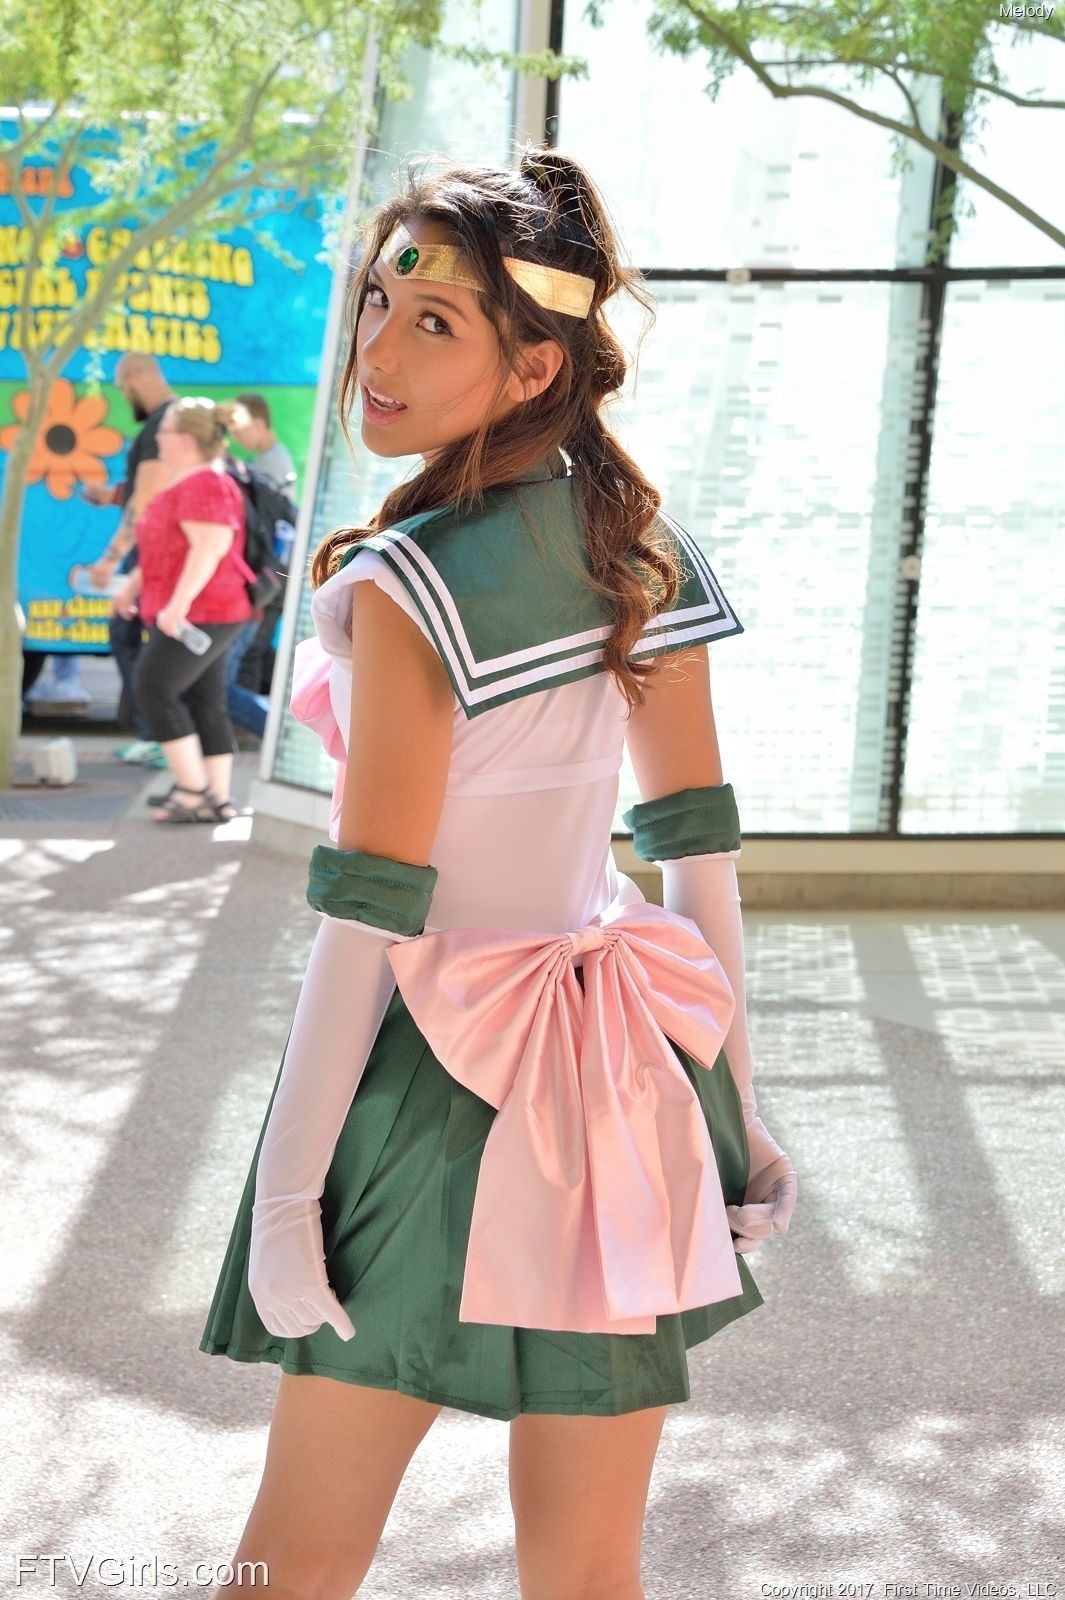 Melody Wylde as Sailor Jupiter 24